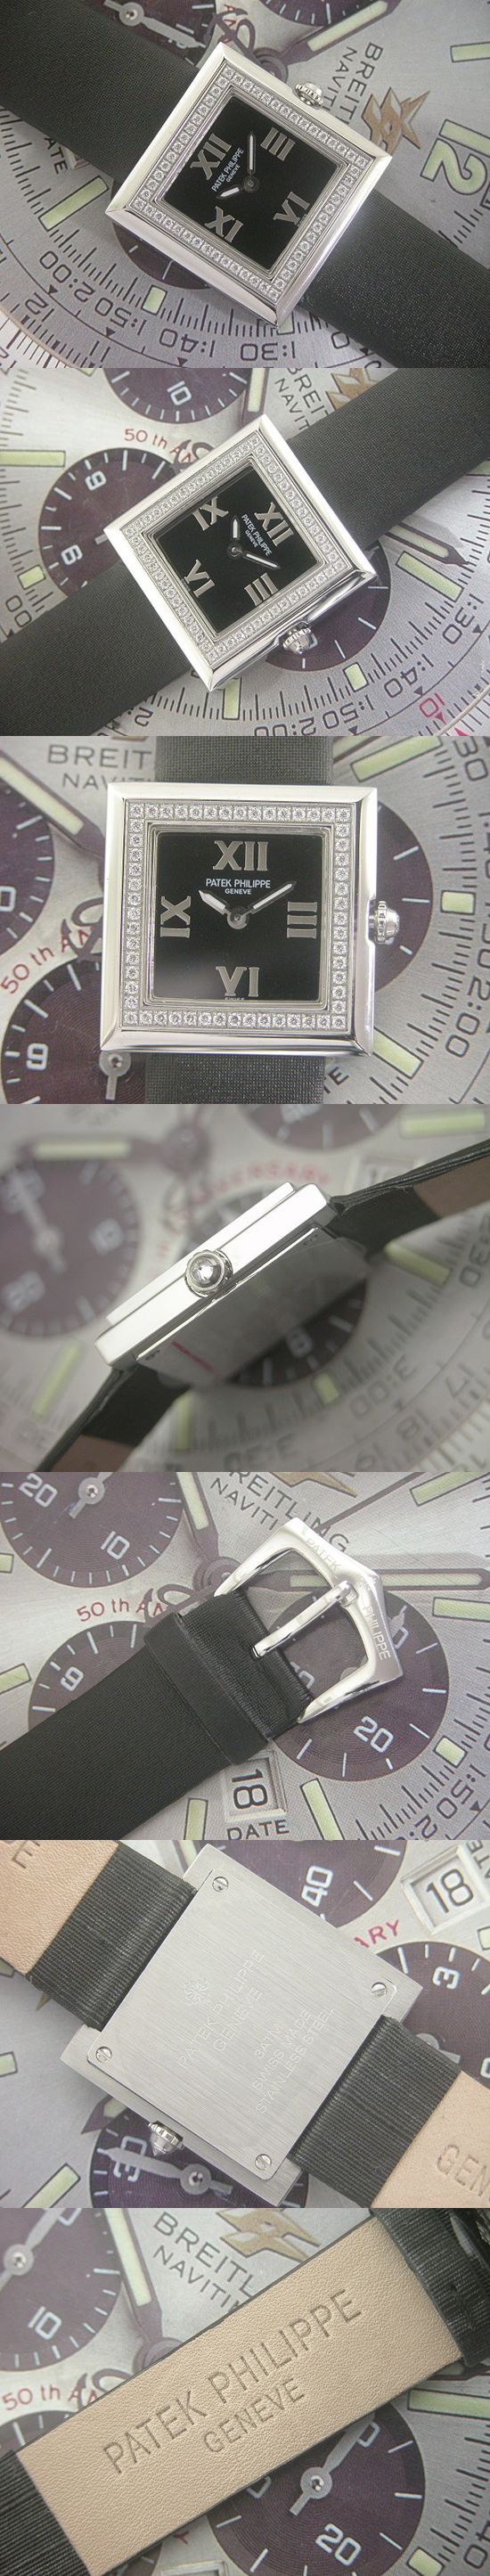 おしゃれなブランド時計がパテックフィリップ -ジュエリー-PATEK PHILIPPE-4869-ab-女性用を提供します.